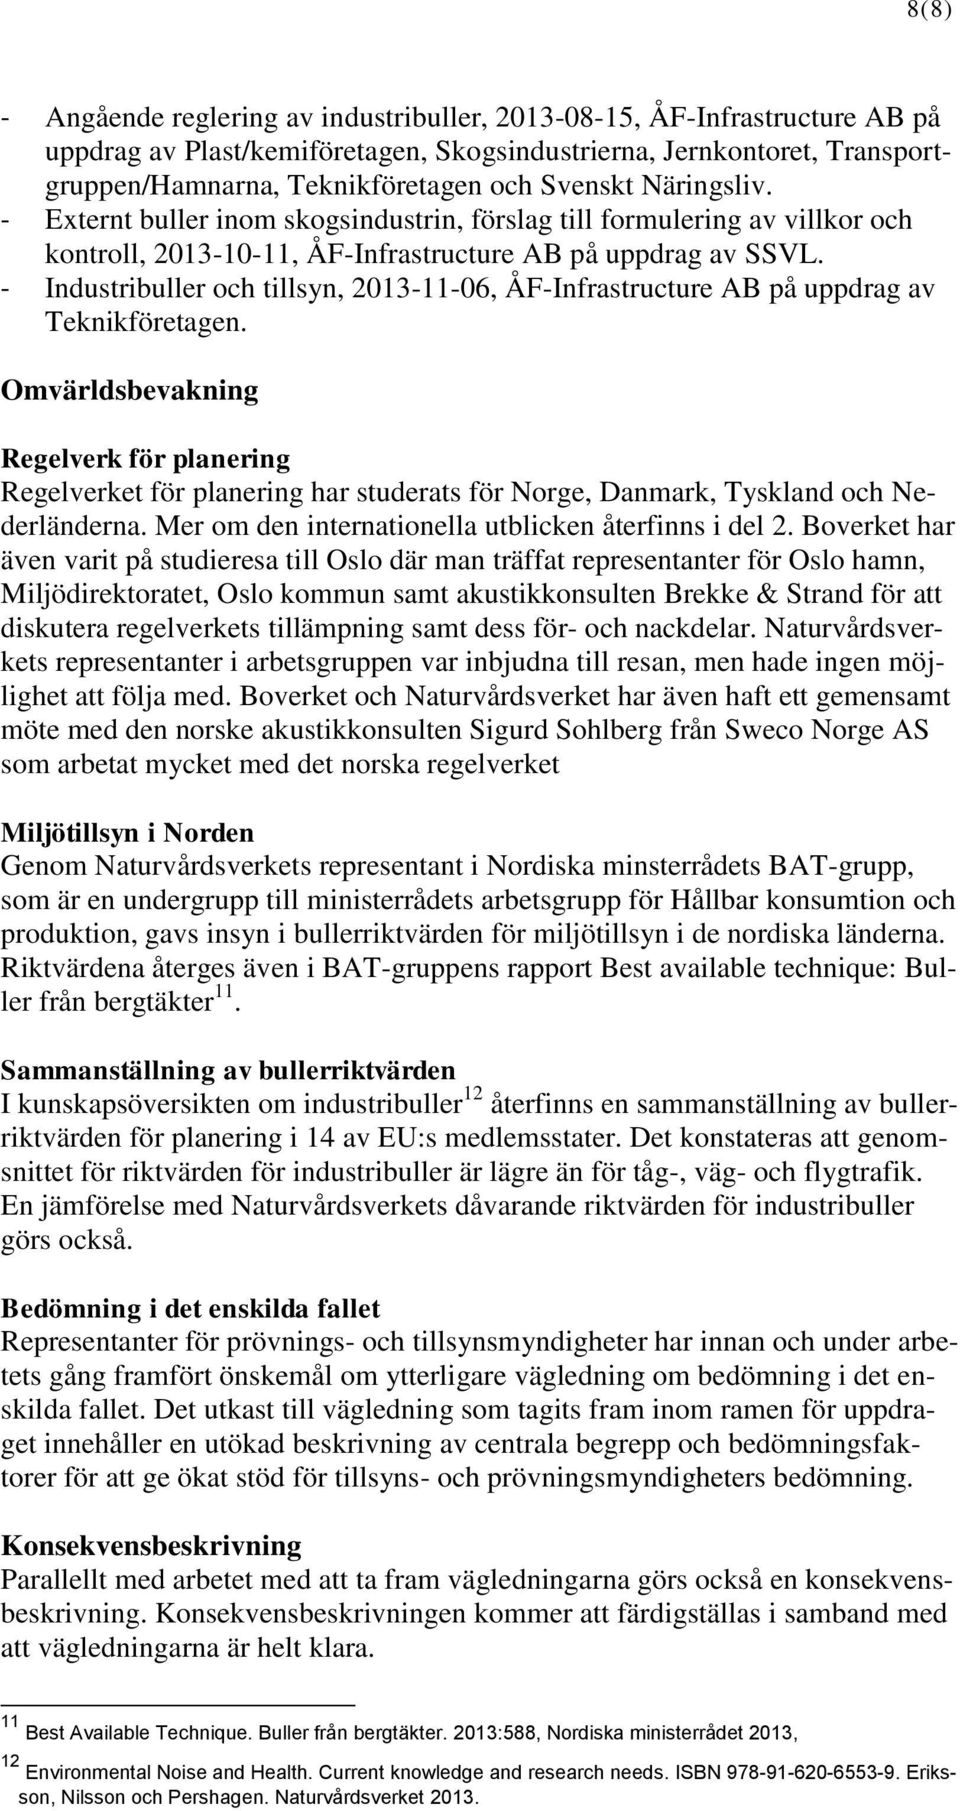 - Industribuller och tillsyn, 2013-11-06, ÅF-Infrastructure AB på uppdrag av Teknikföretagen.